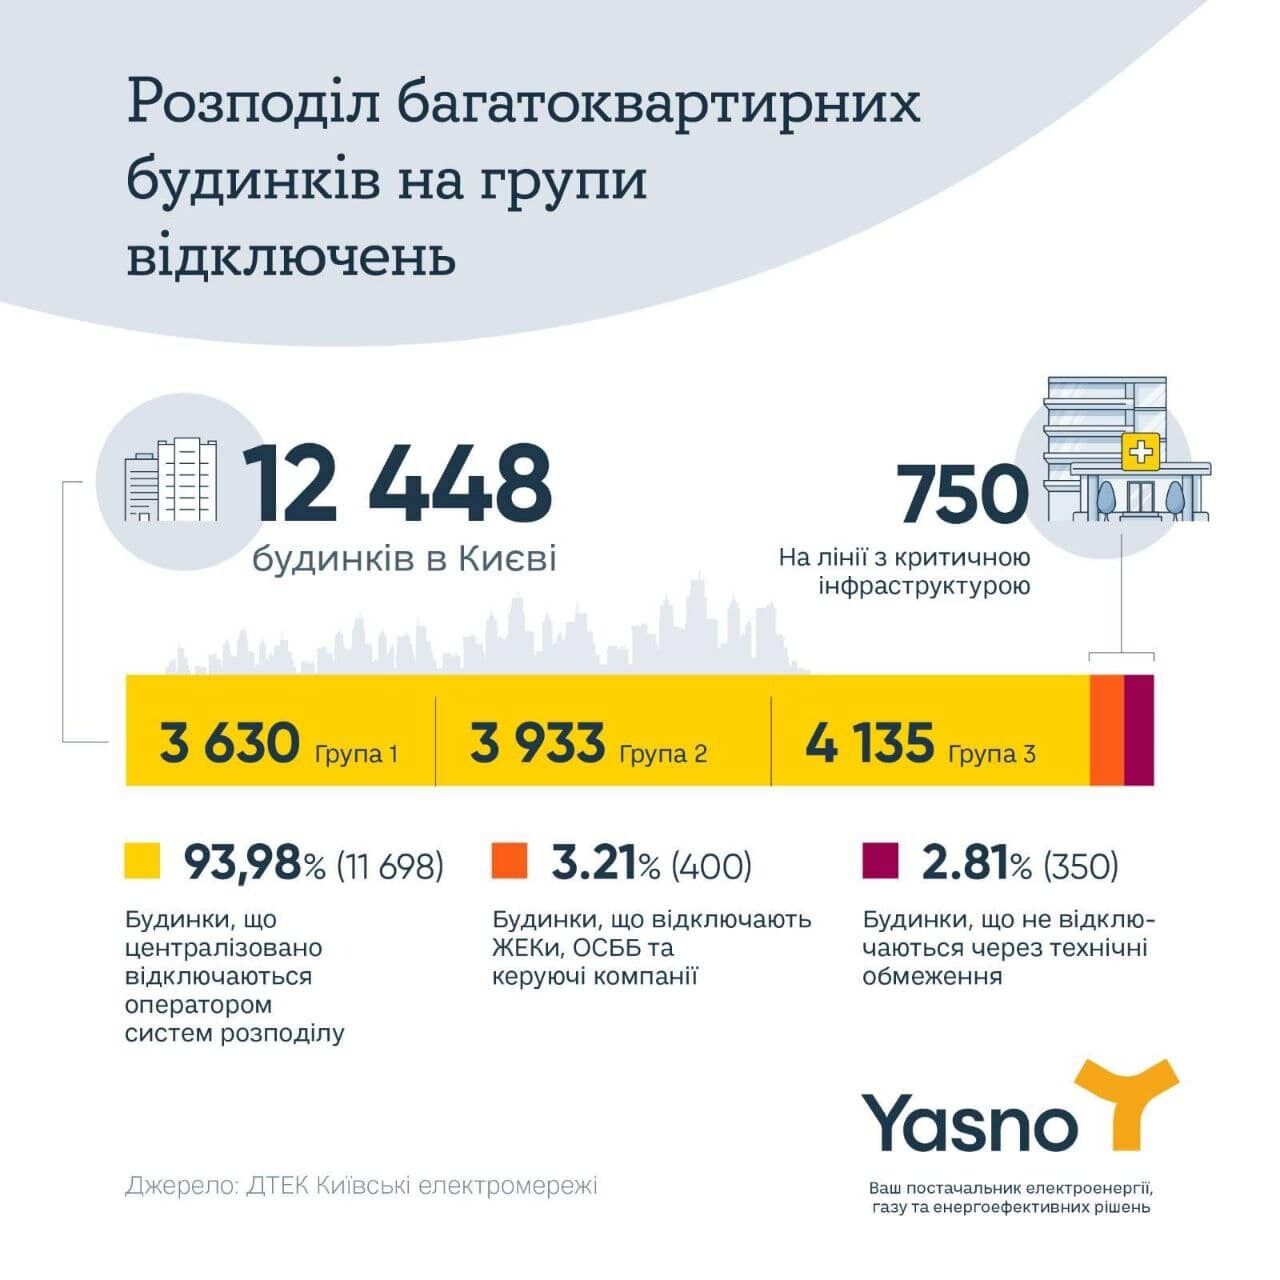 В YASNO рассказали, сколько в Киеве жилых домов, где отключения света невозможны технически